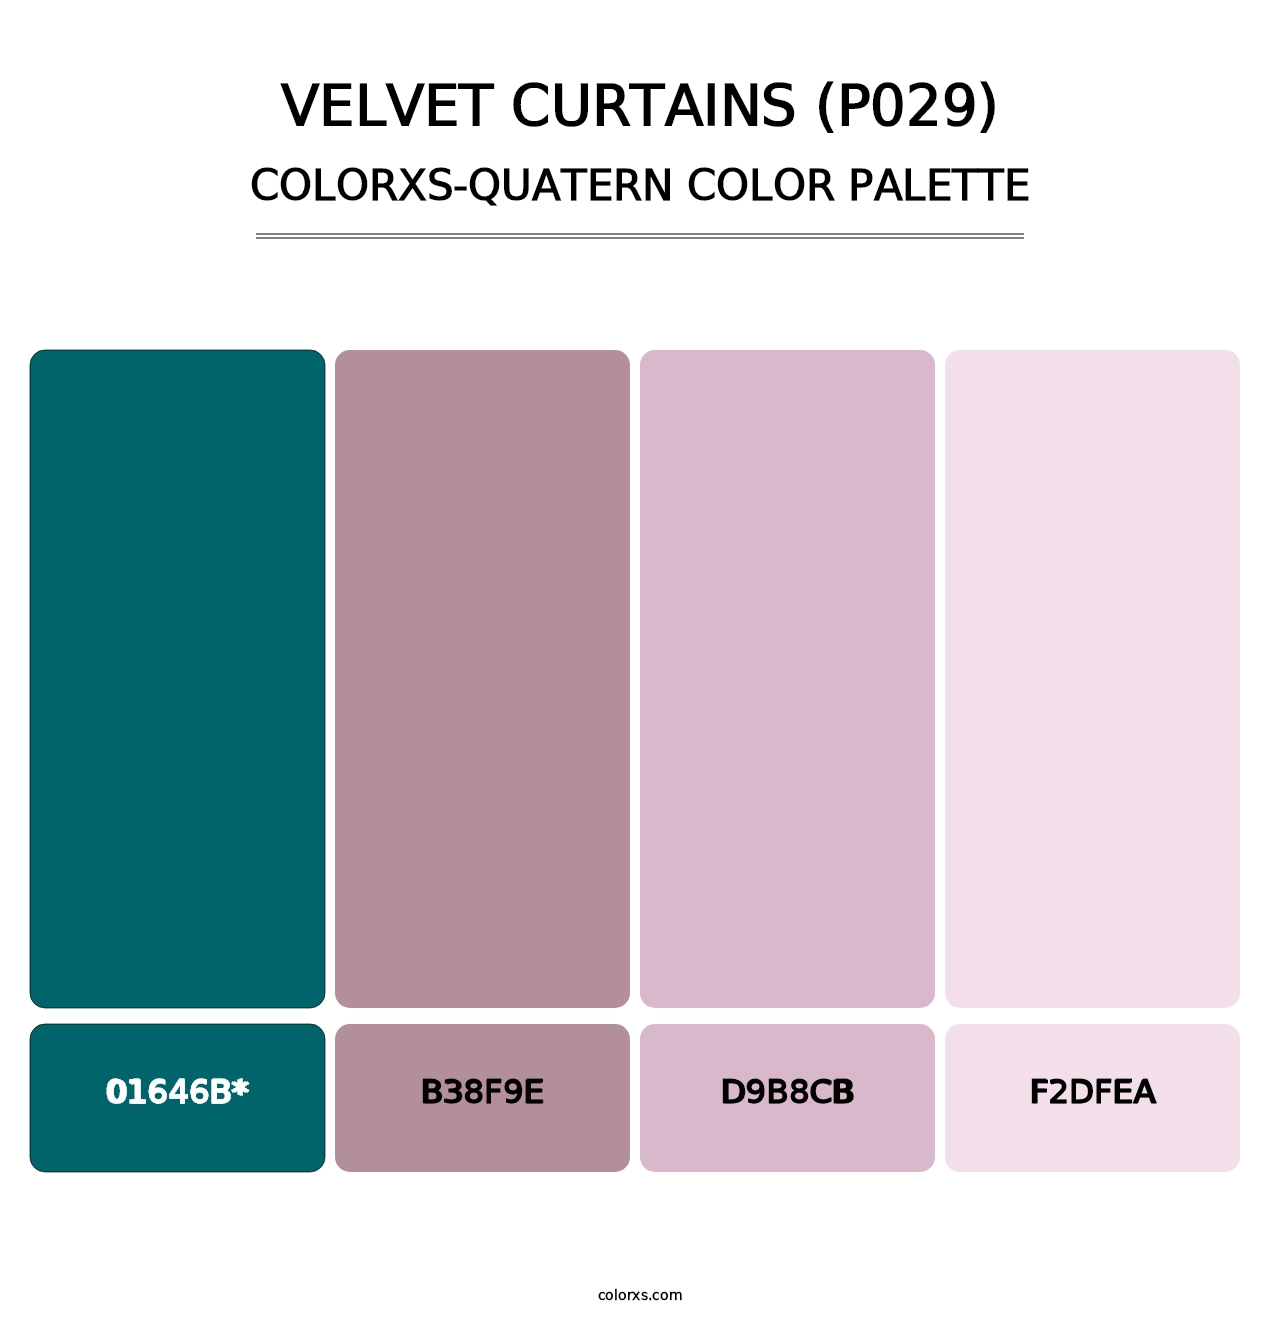 Velvet Curtains (P029) - Colorxs Quatern Palette